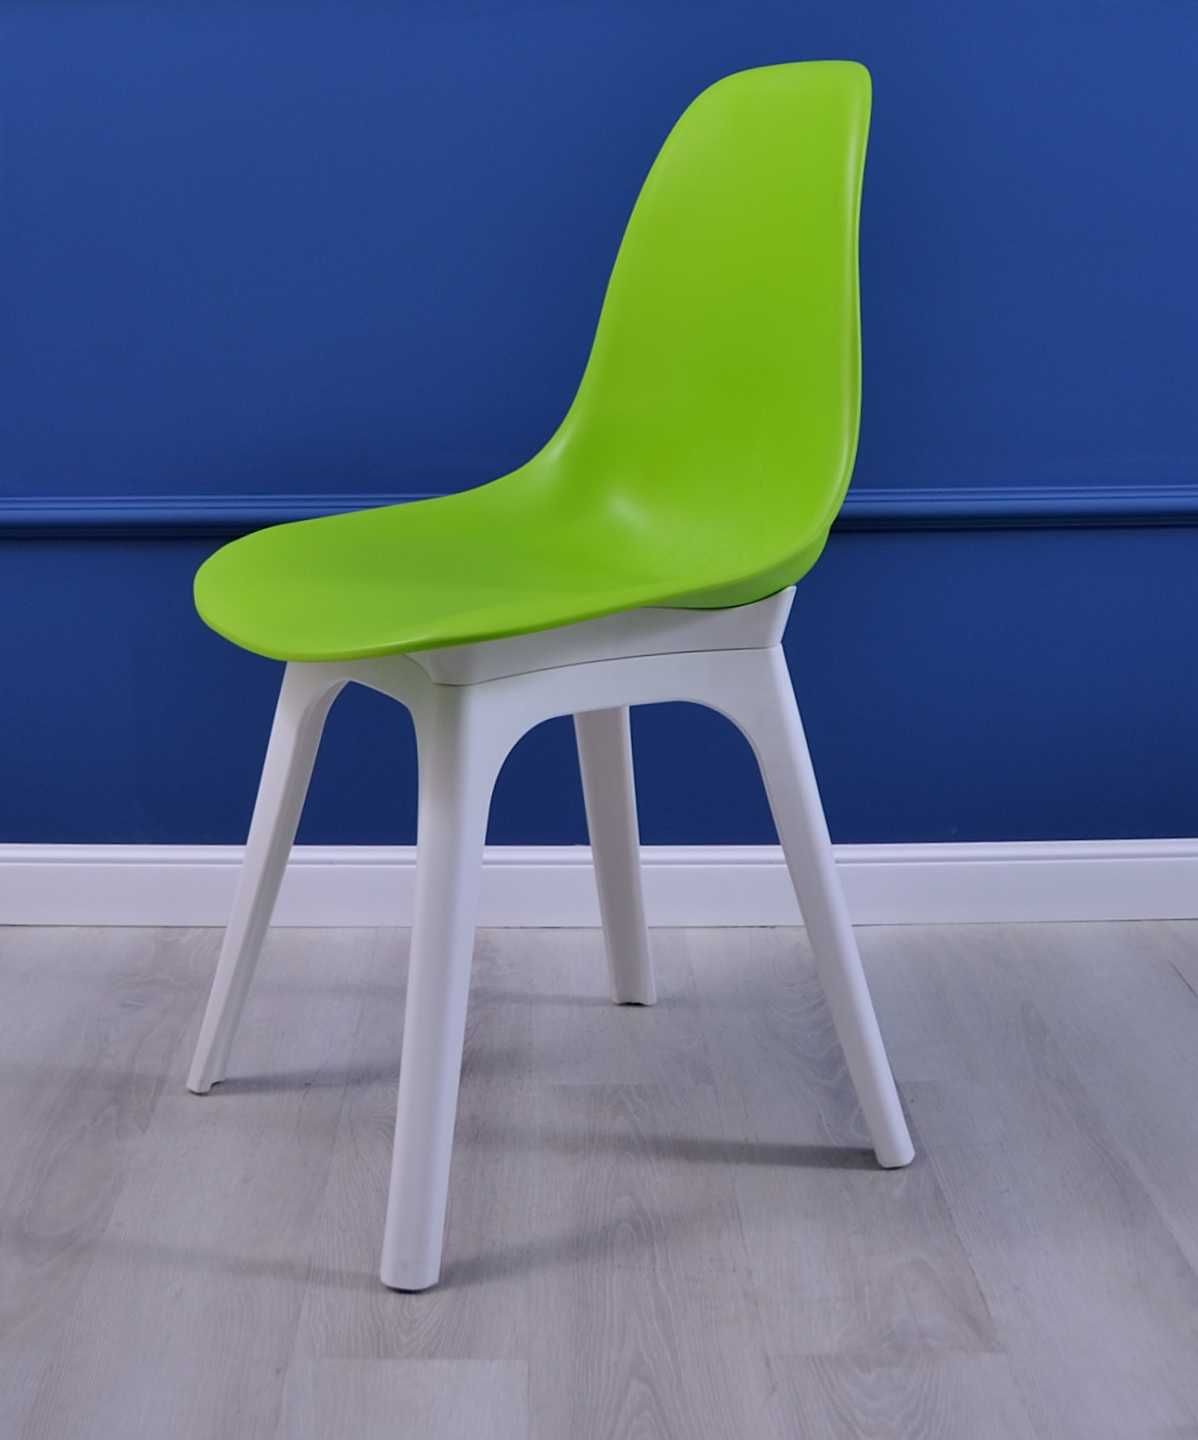 Стул пластиковый Имс кухонный стул кресло пластиковый зеленый